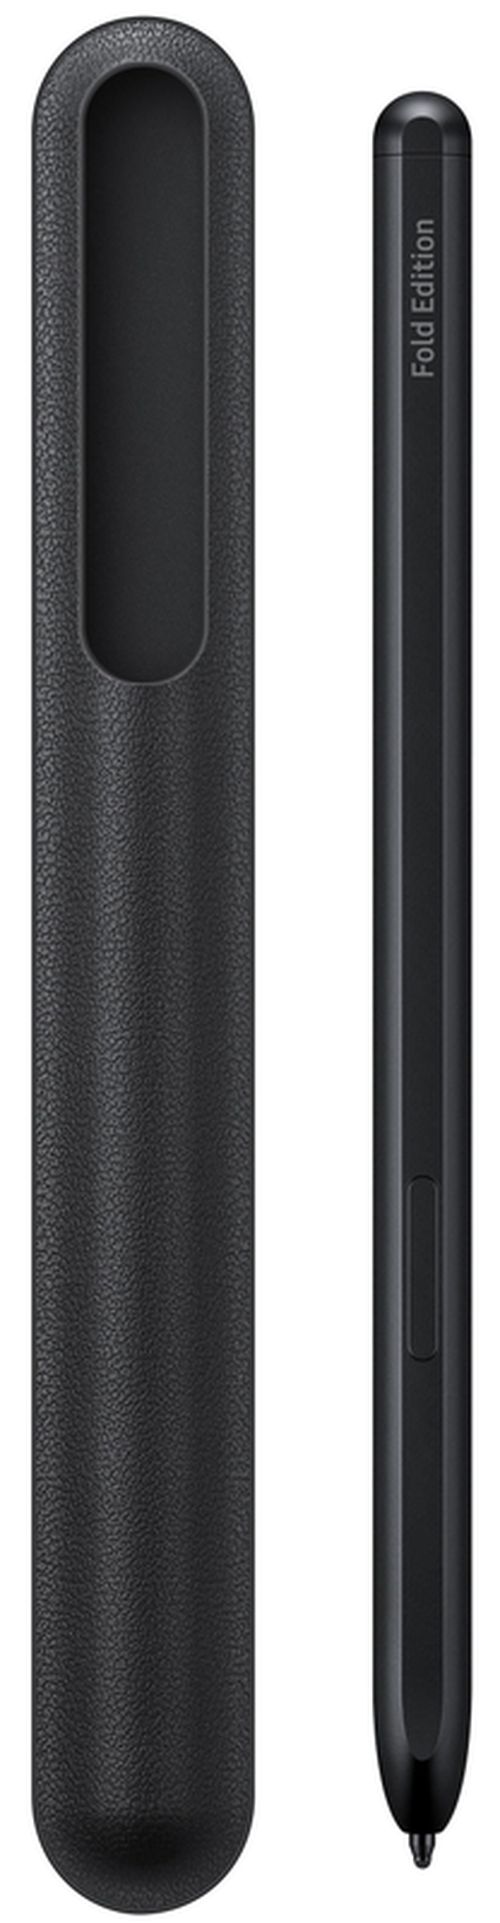 cumpără Accesoriu pentru aparat mobil Samsung EJ-PF926 S Pen Q2 Black în Chișinău 